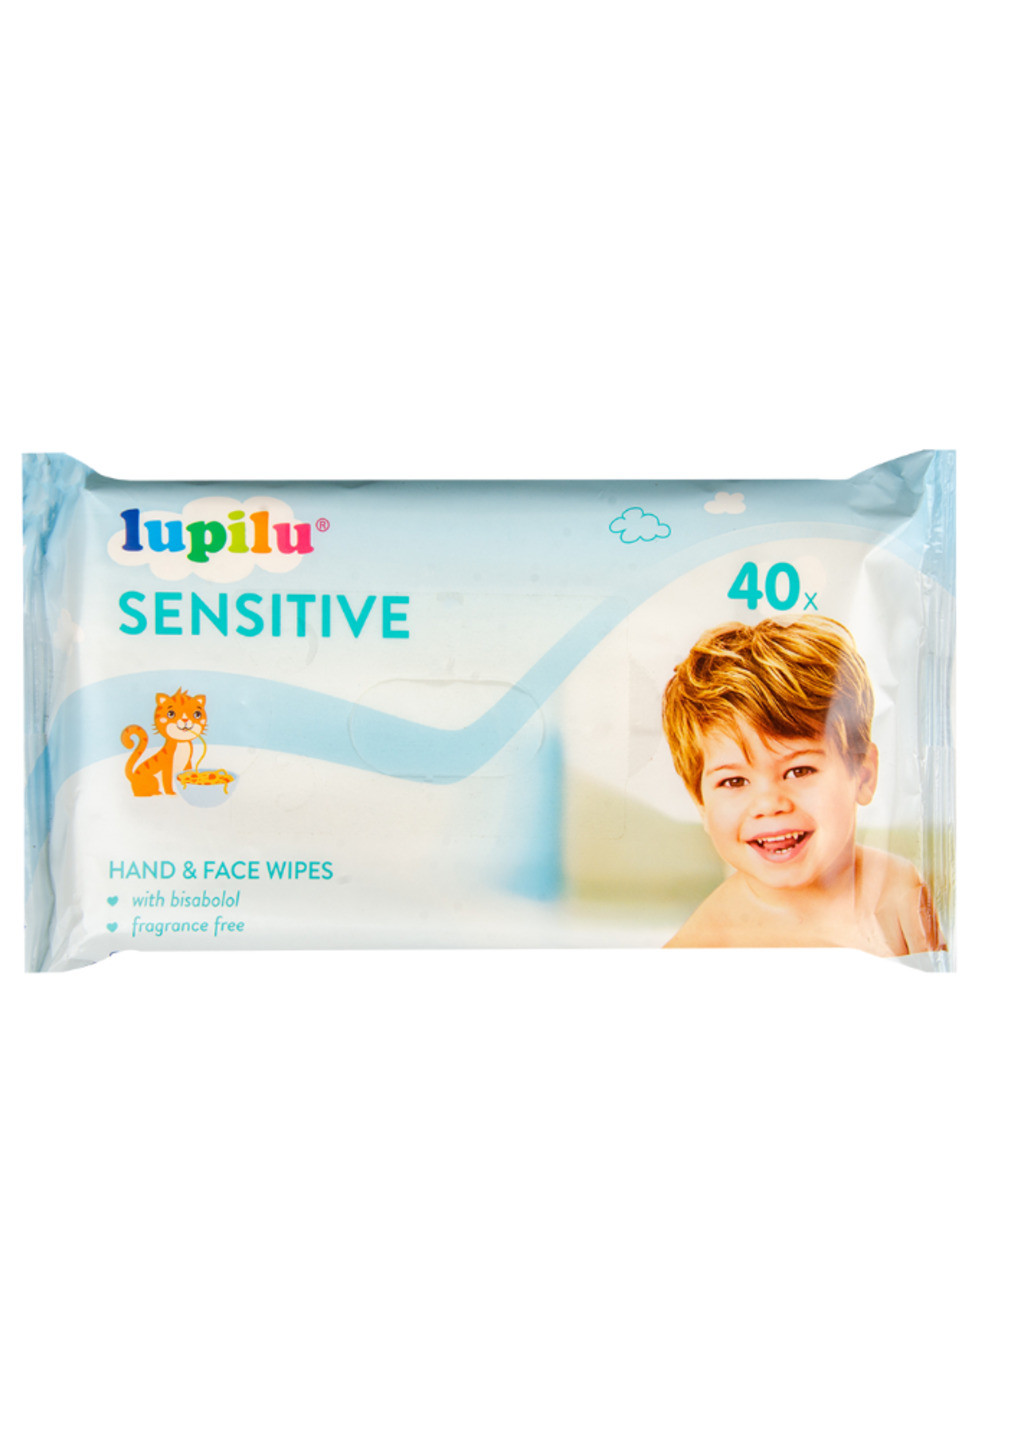 Детские влажные салфетки Sensitive 40 шт Lupilu (241715822)